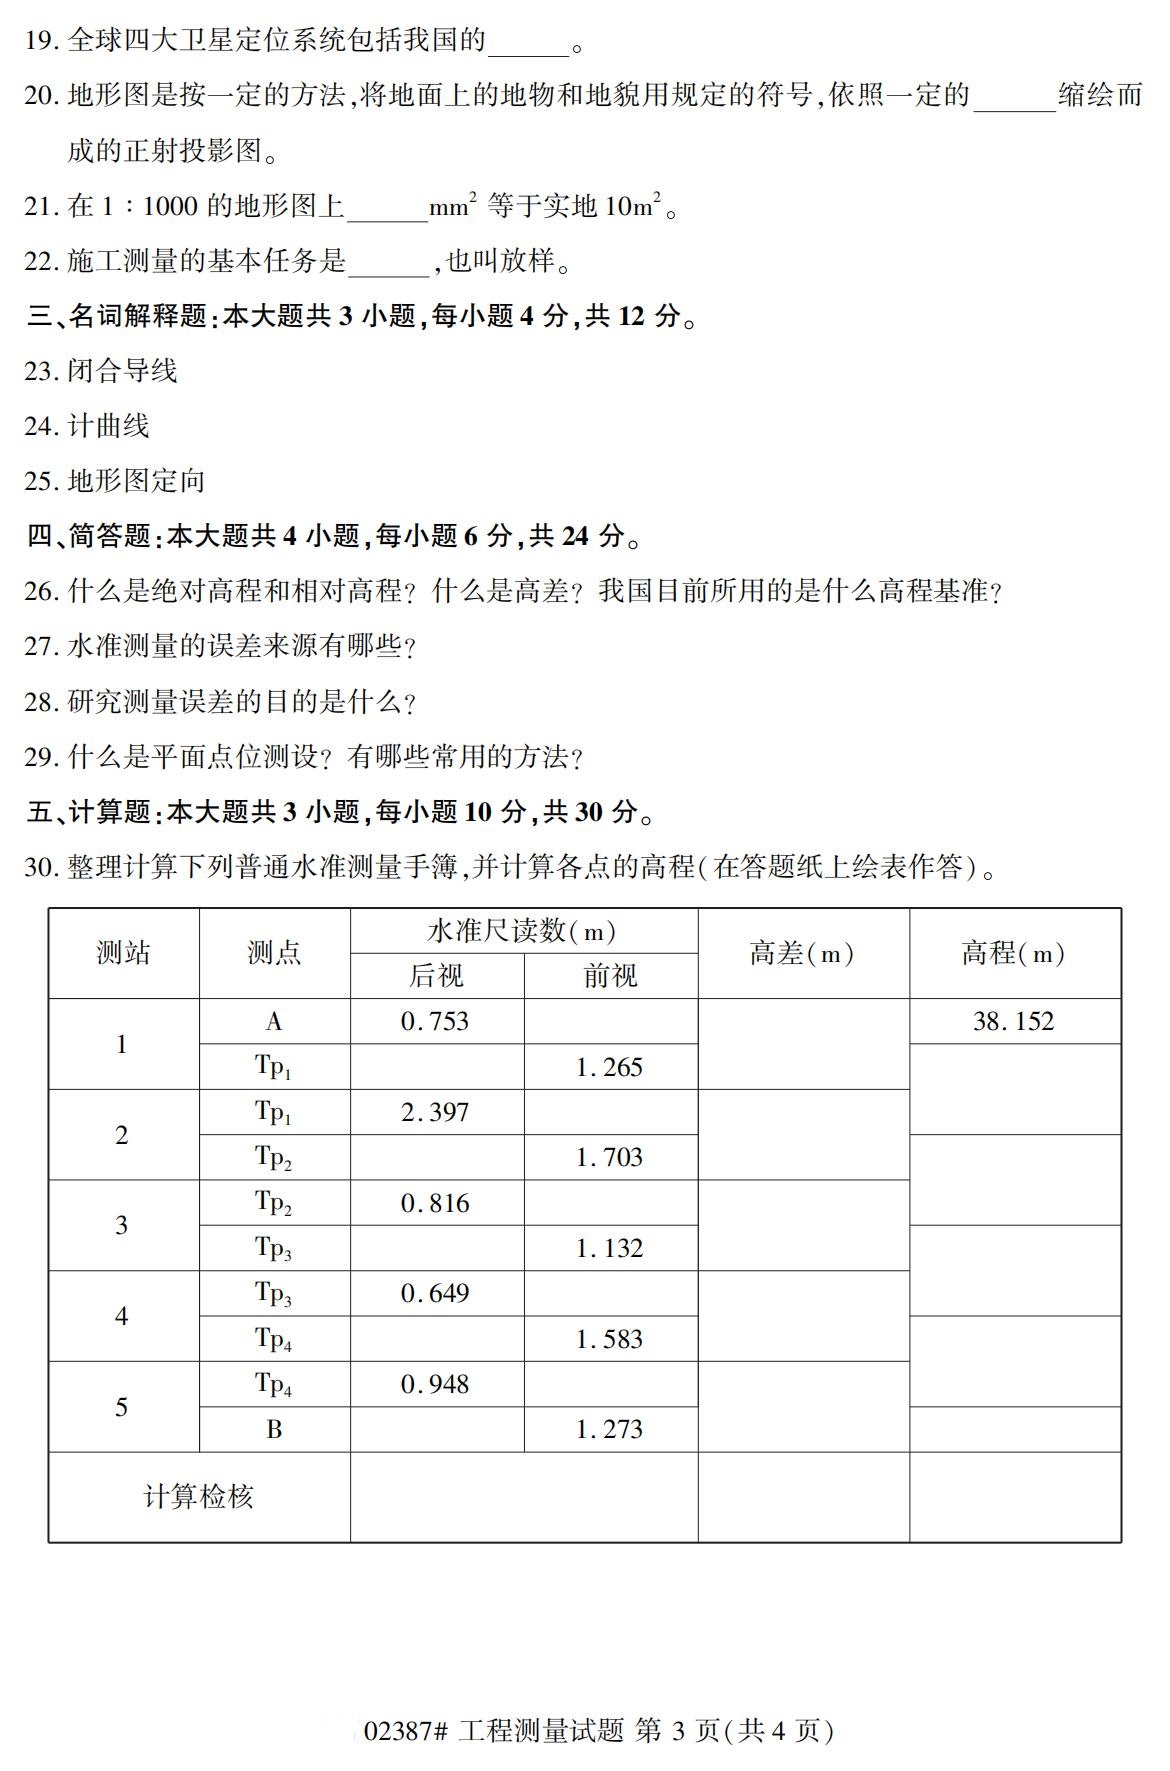 贵州2020年10月高等教育自考工程测量02387真题